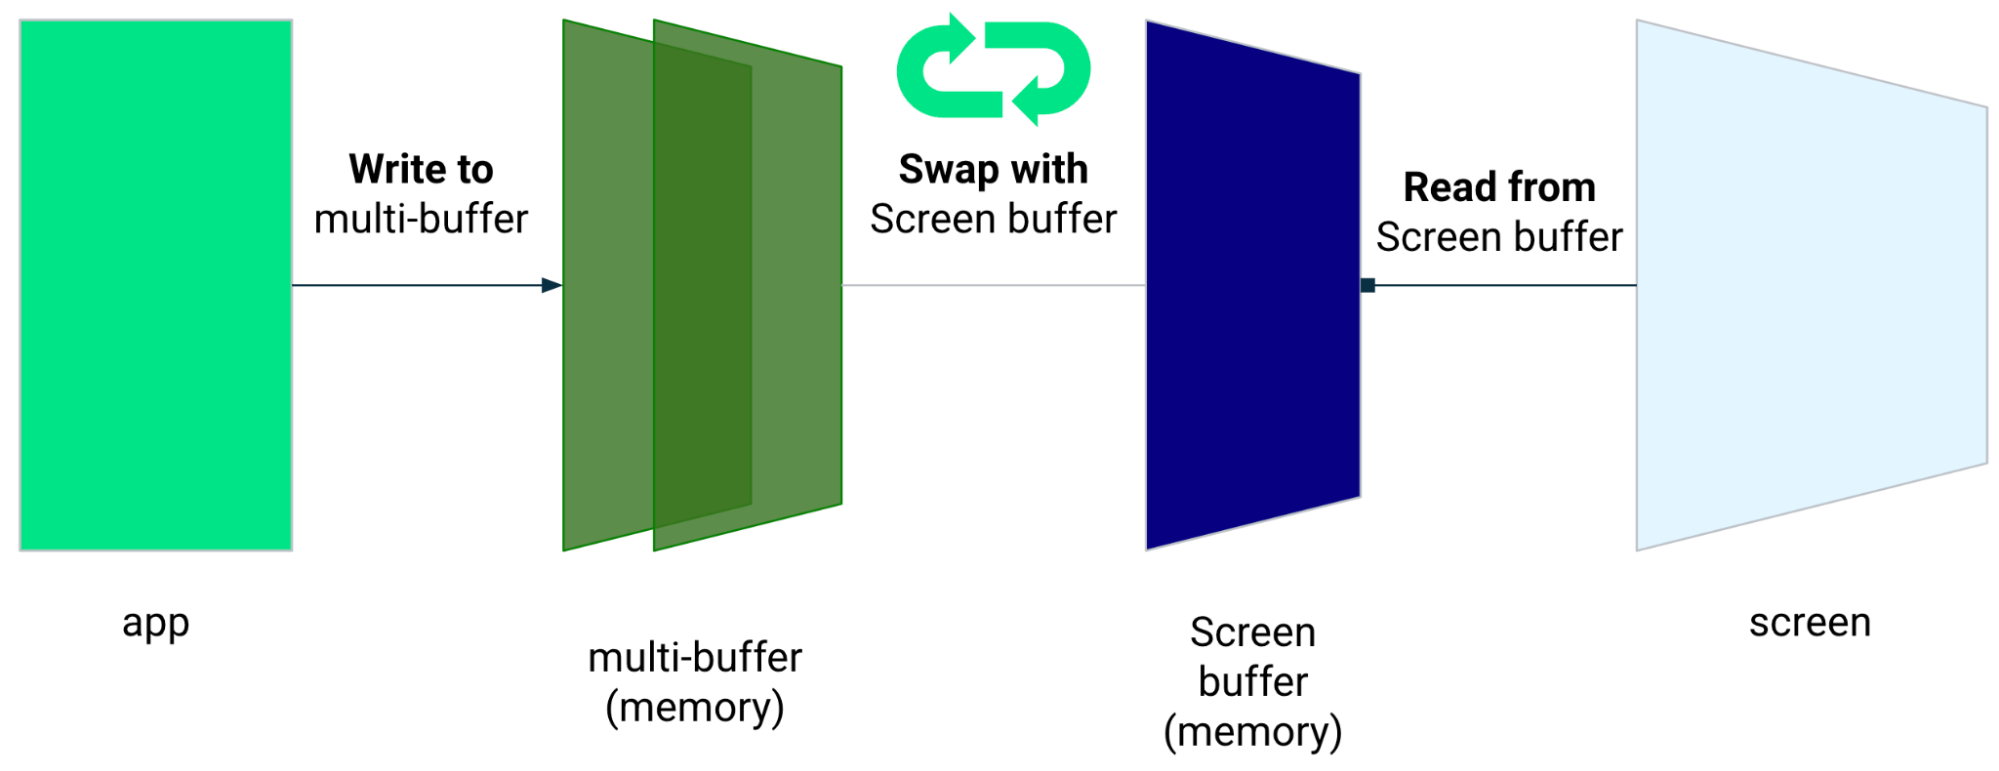 L&#39;app scrive sul multi-buffer, che viene scambiato con il buffer dello schermo. L&#39;app legge dal buffer dello schermo.